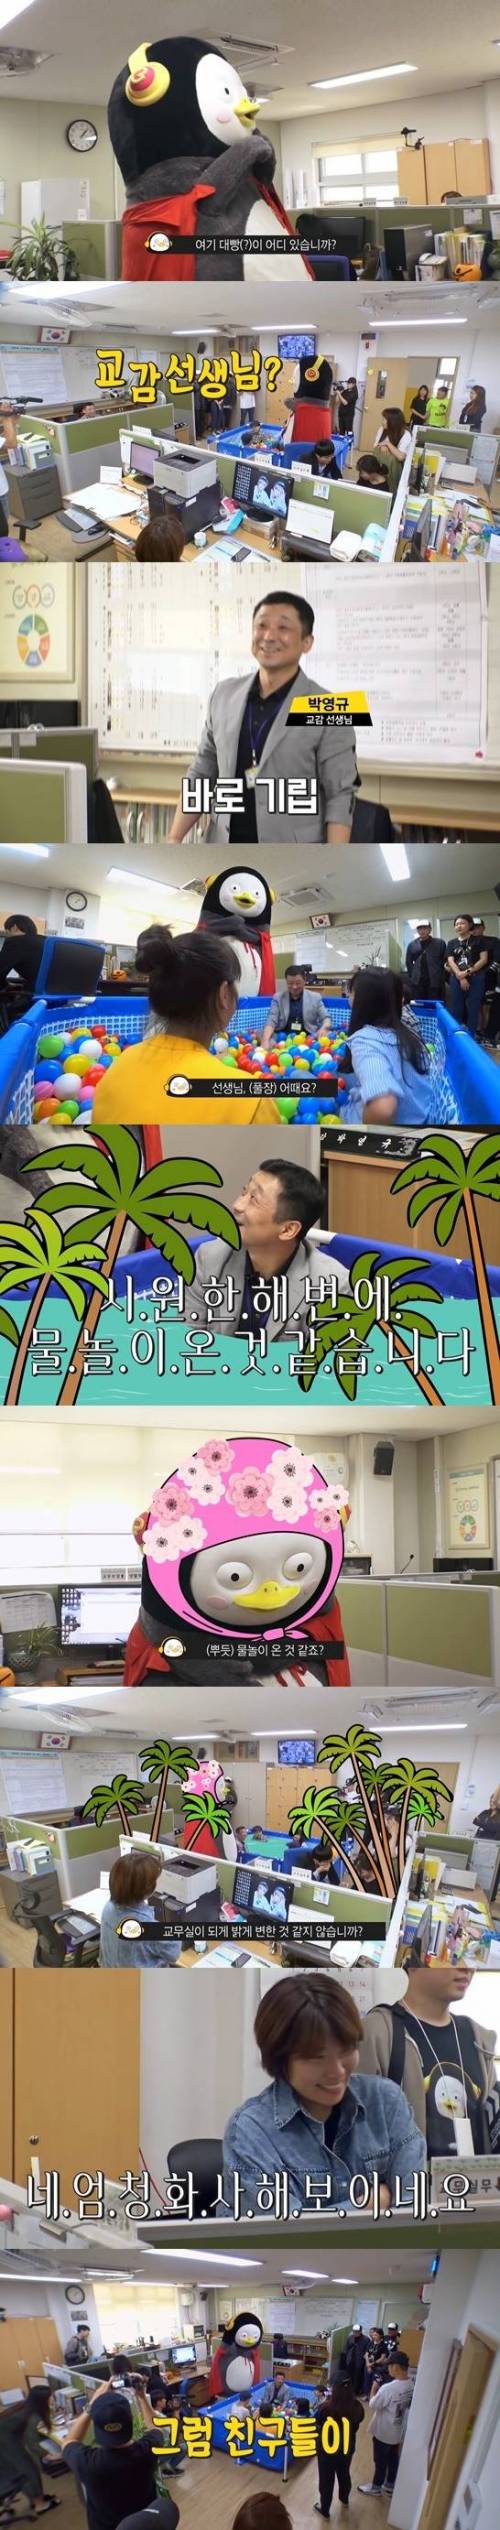 [스압] 대한민국 초등학교에 혁신을 일으키려는 펭수.jpg